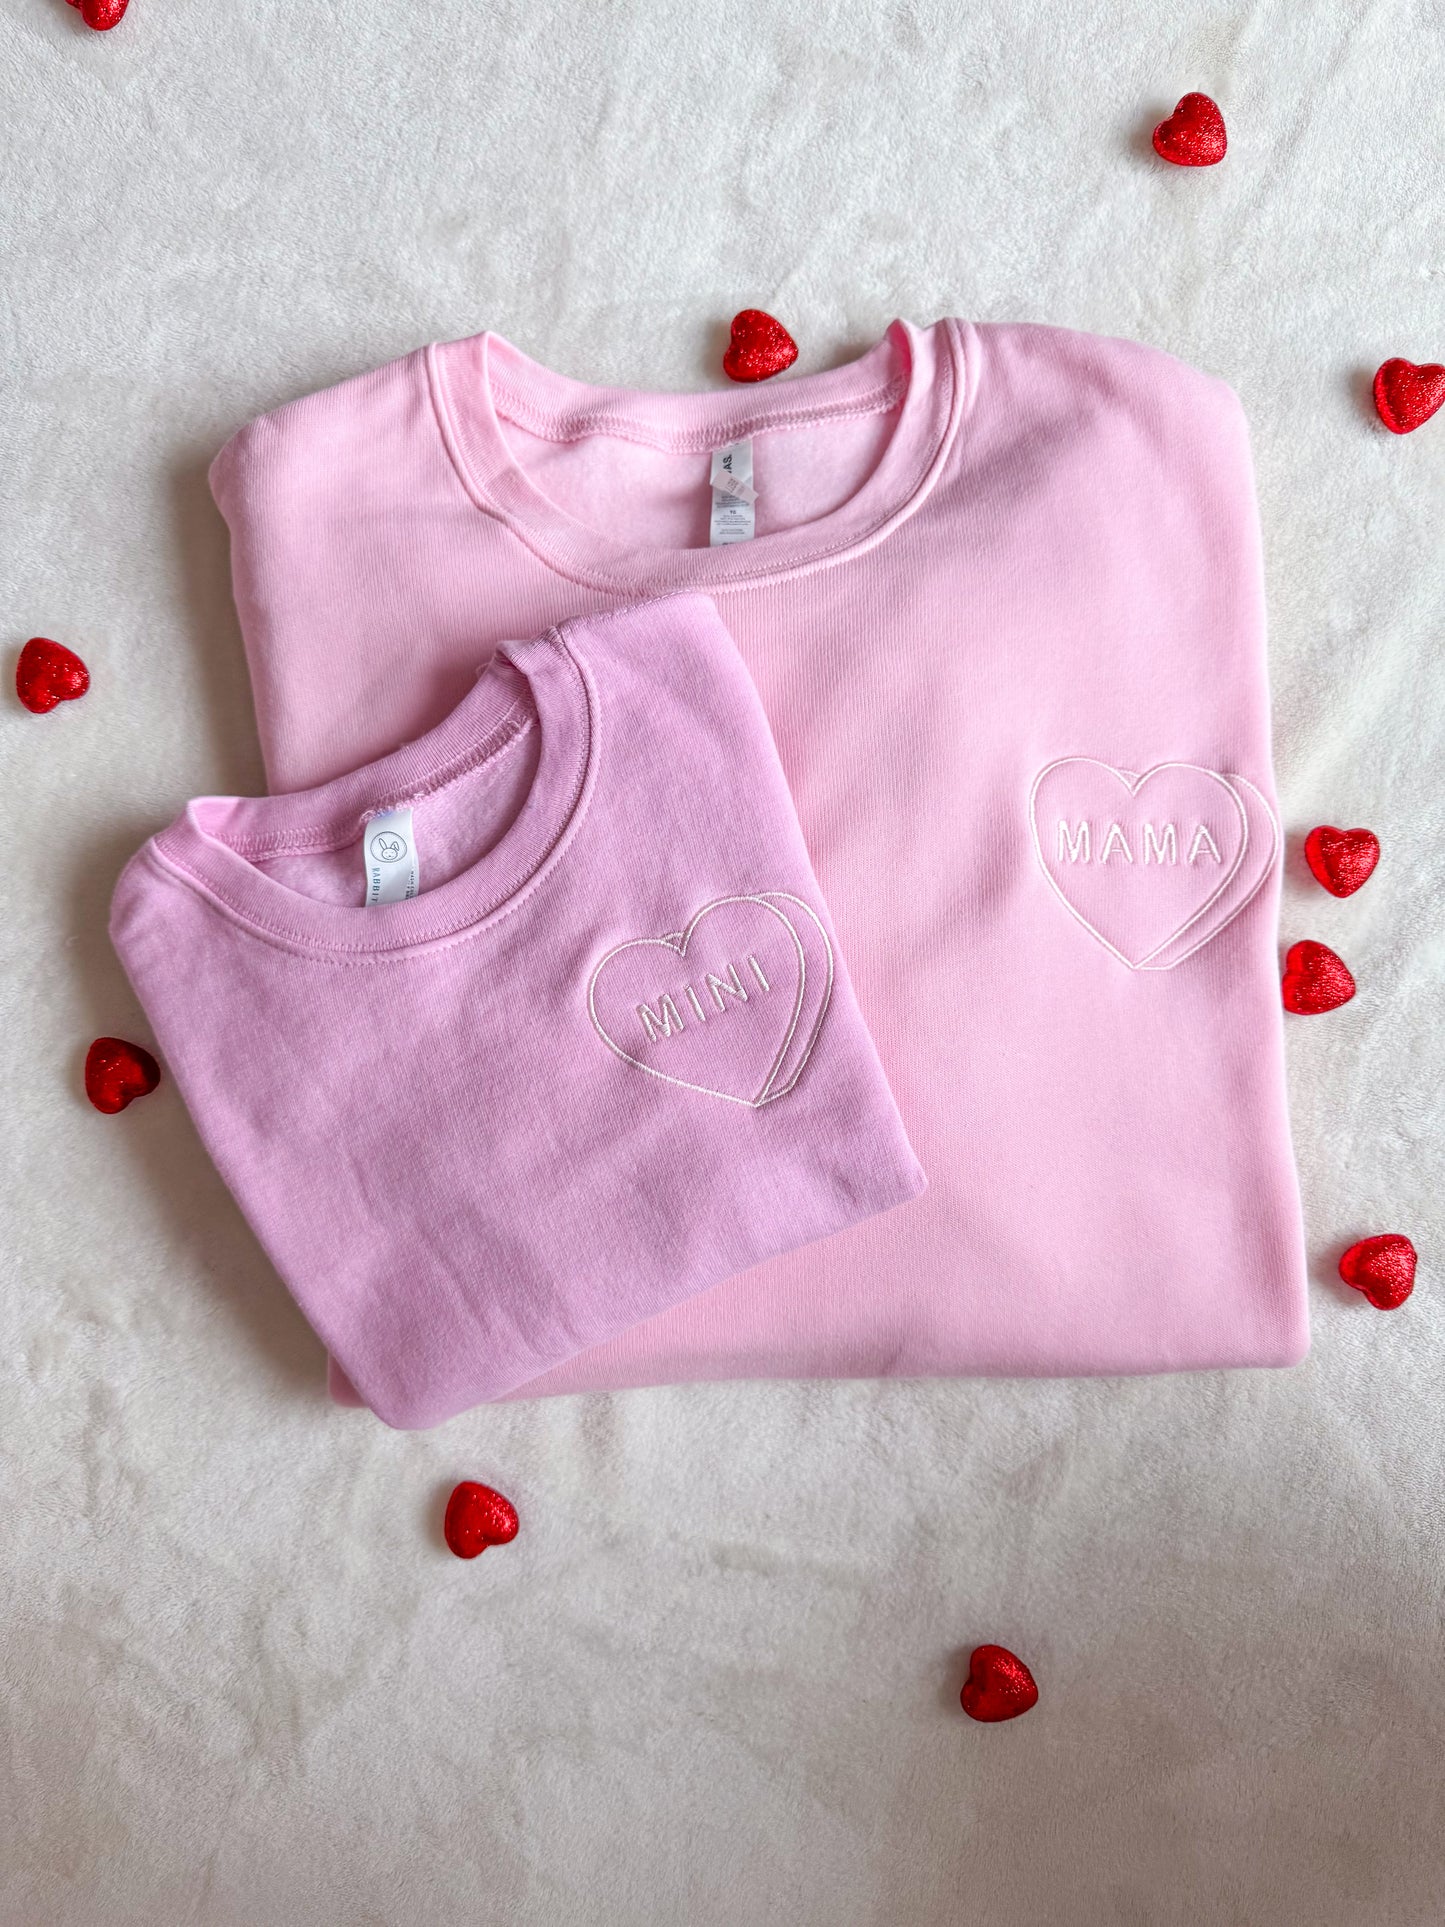 Candy Heart - MAMA & MINI - Embroidered Sweatshirt